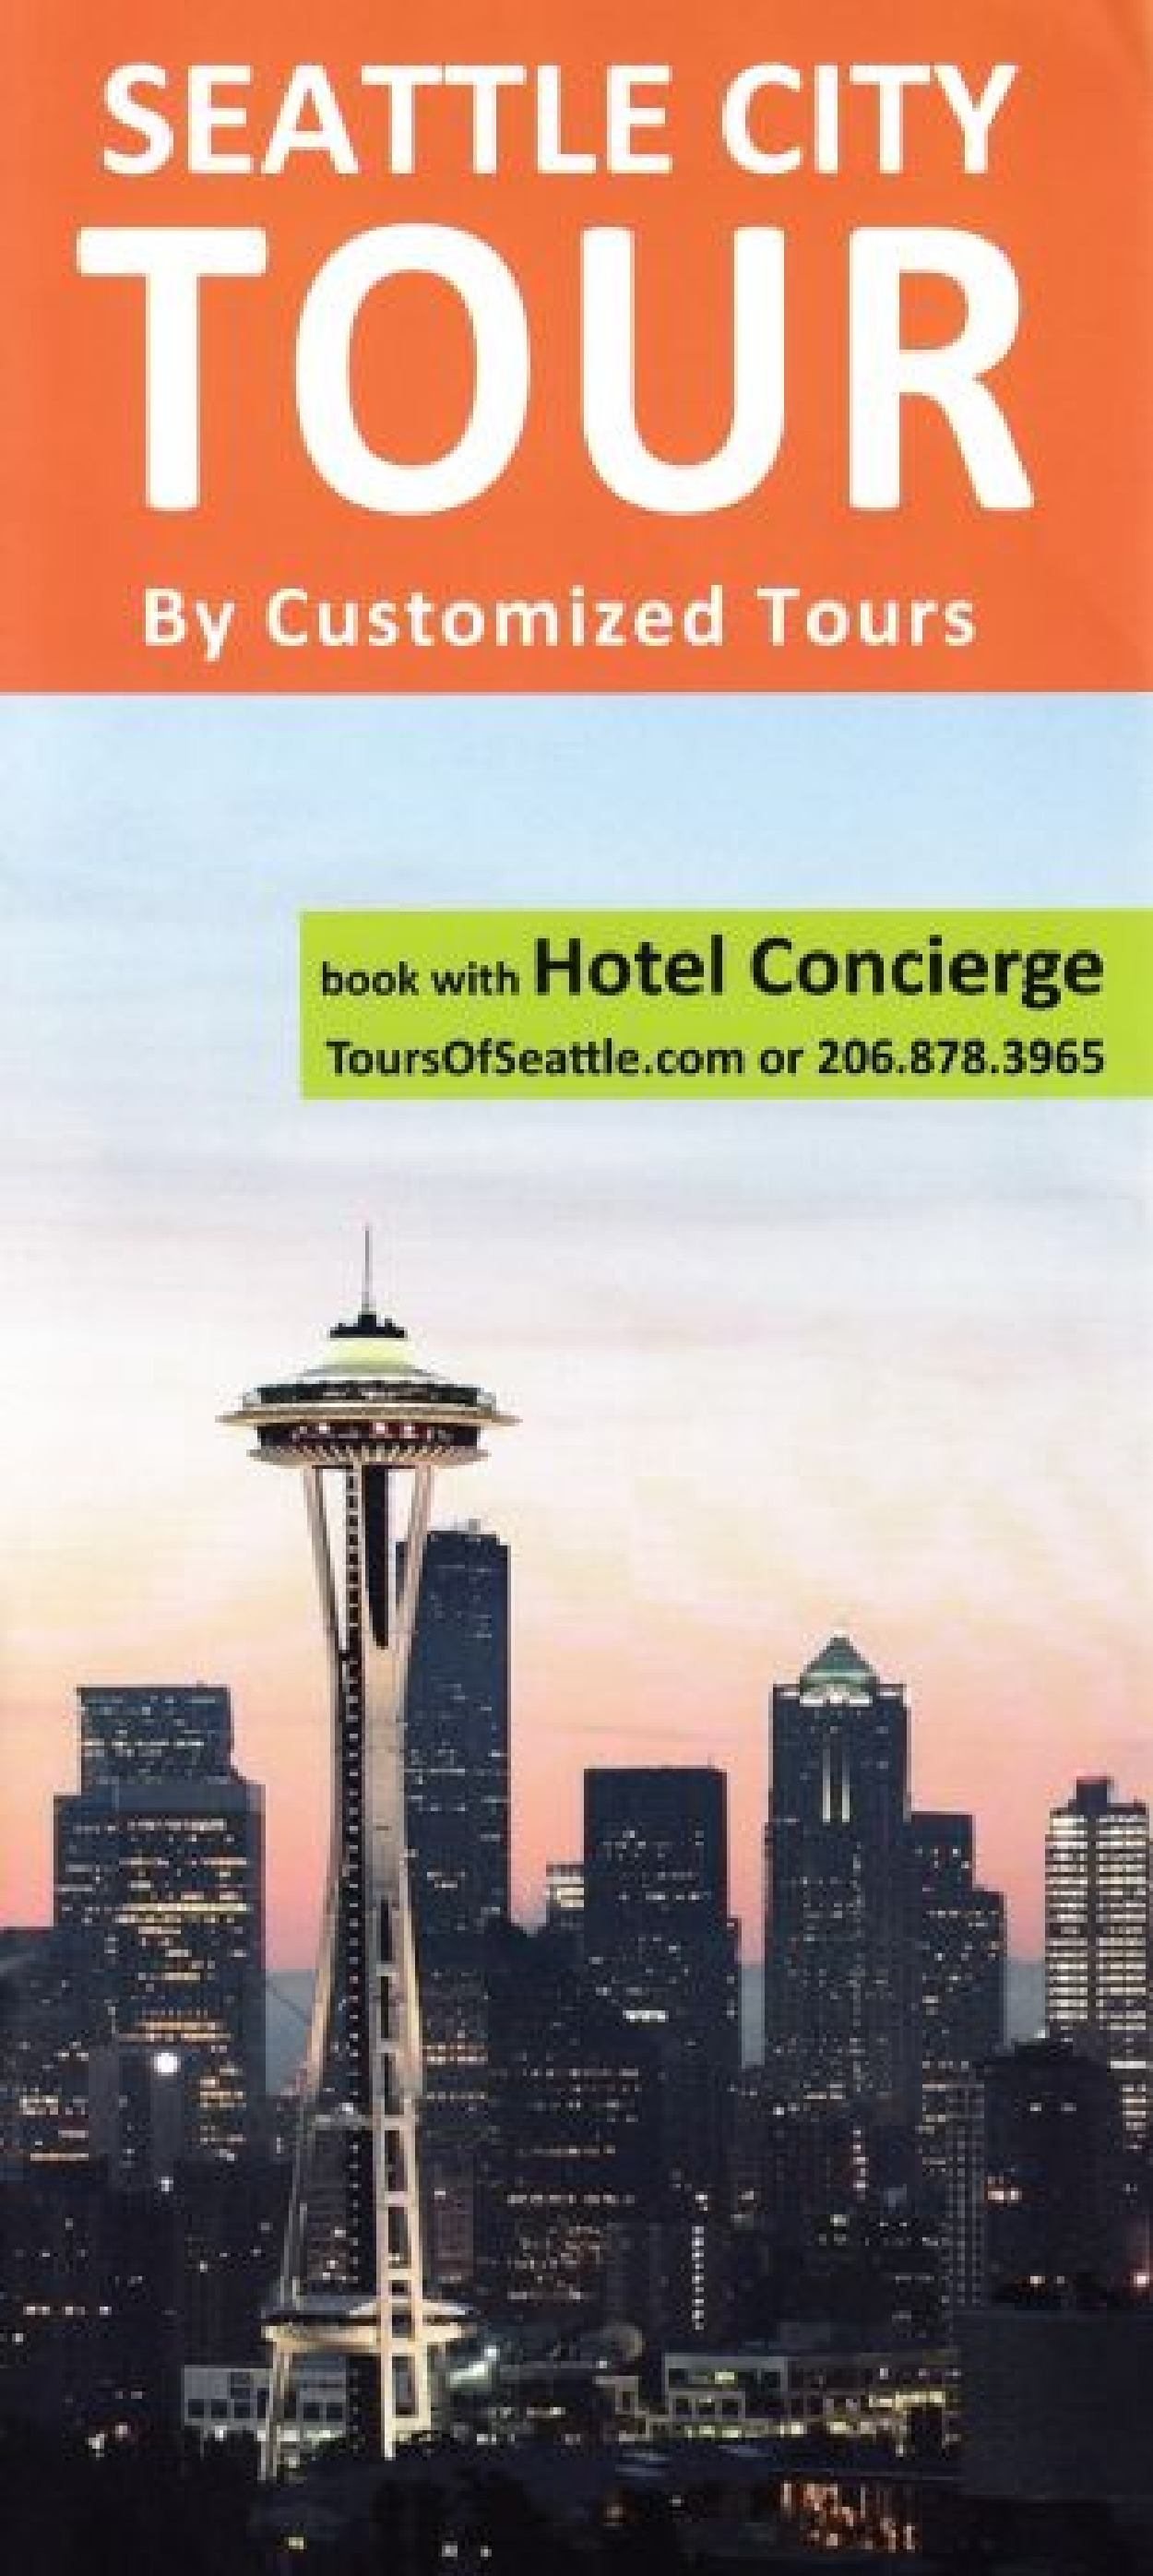 Tours of Seattle Seattle, WA